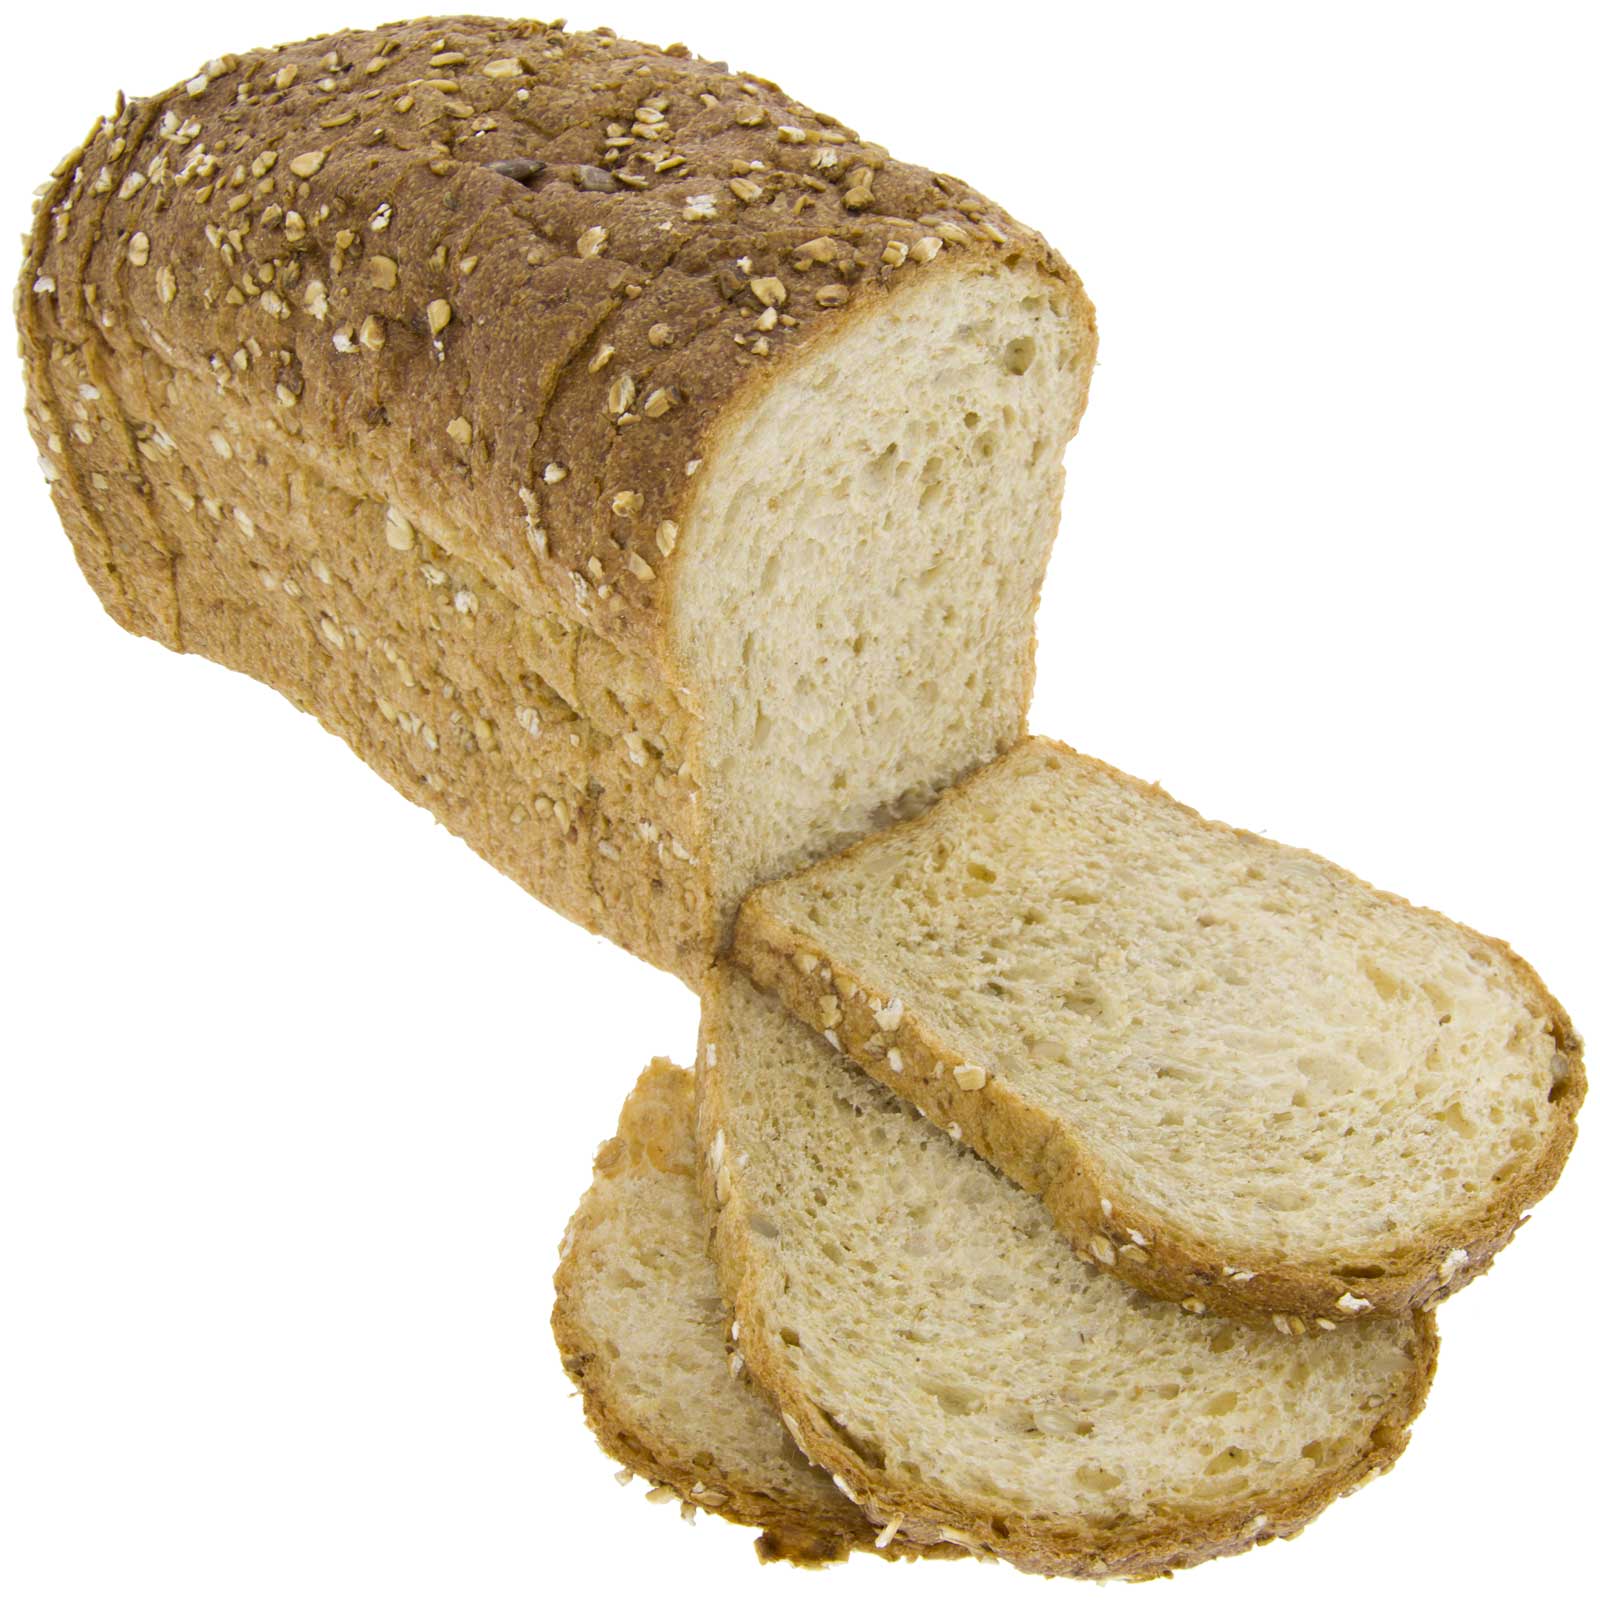 Khorasan Kamut wheat bread mould ®  Organic whole wheat 450g